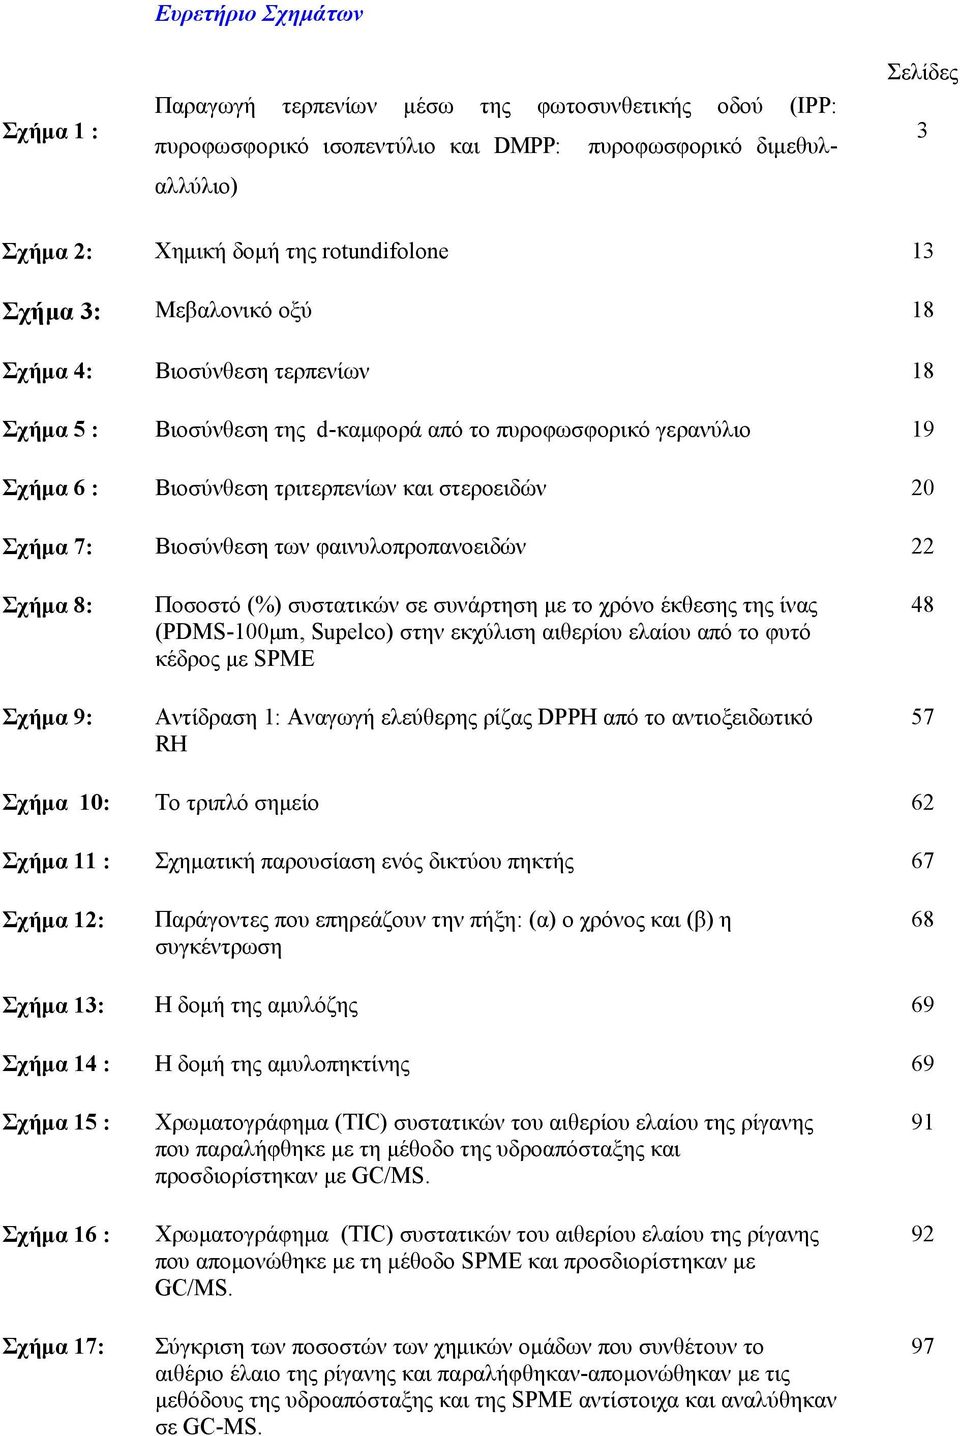 Βιοσύνθεση των φαινυλοπροπανοειδών 22 Σχήμα 8: Σχήμα 9: Ποσοστό (%) συστατικών σε συνάρτηση με το χρόνο έκθεσης της ίνας (PDMS-100μm, Supelco) στην εκχύλιση αιθερίου ελαίου από το φυτό κέδρος με SPME